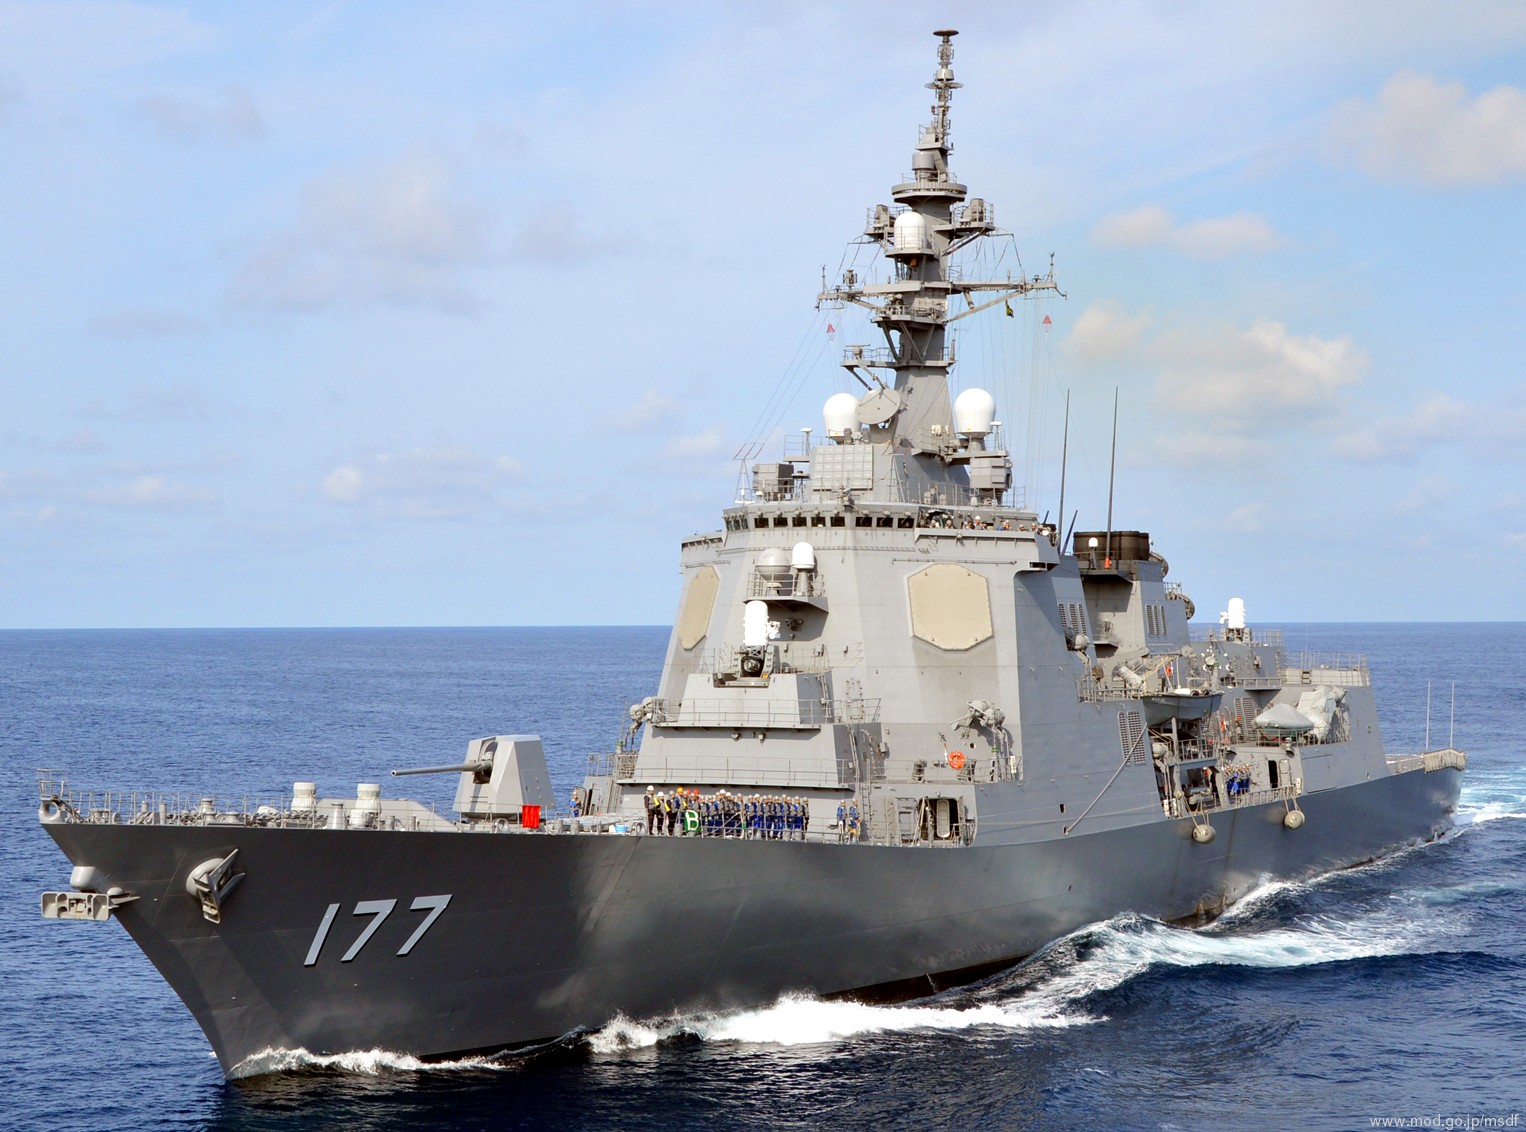 ddg-177 jds atago guided missile destroyer japan maritime self defense force jmsdf 16